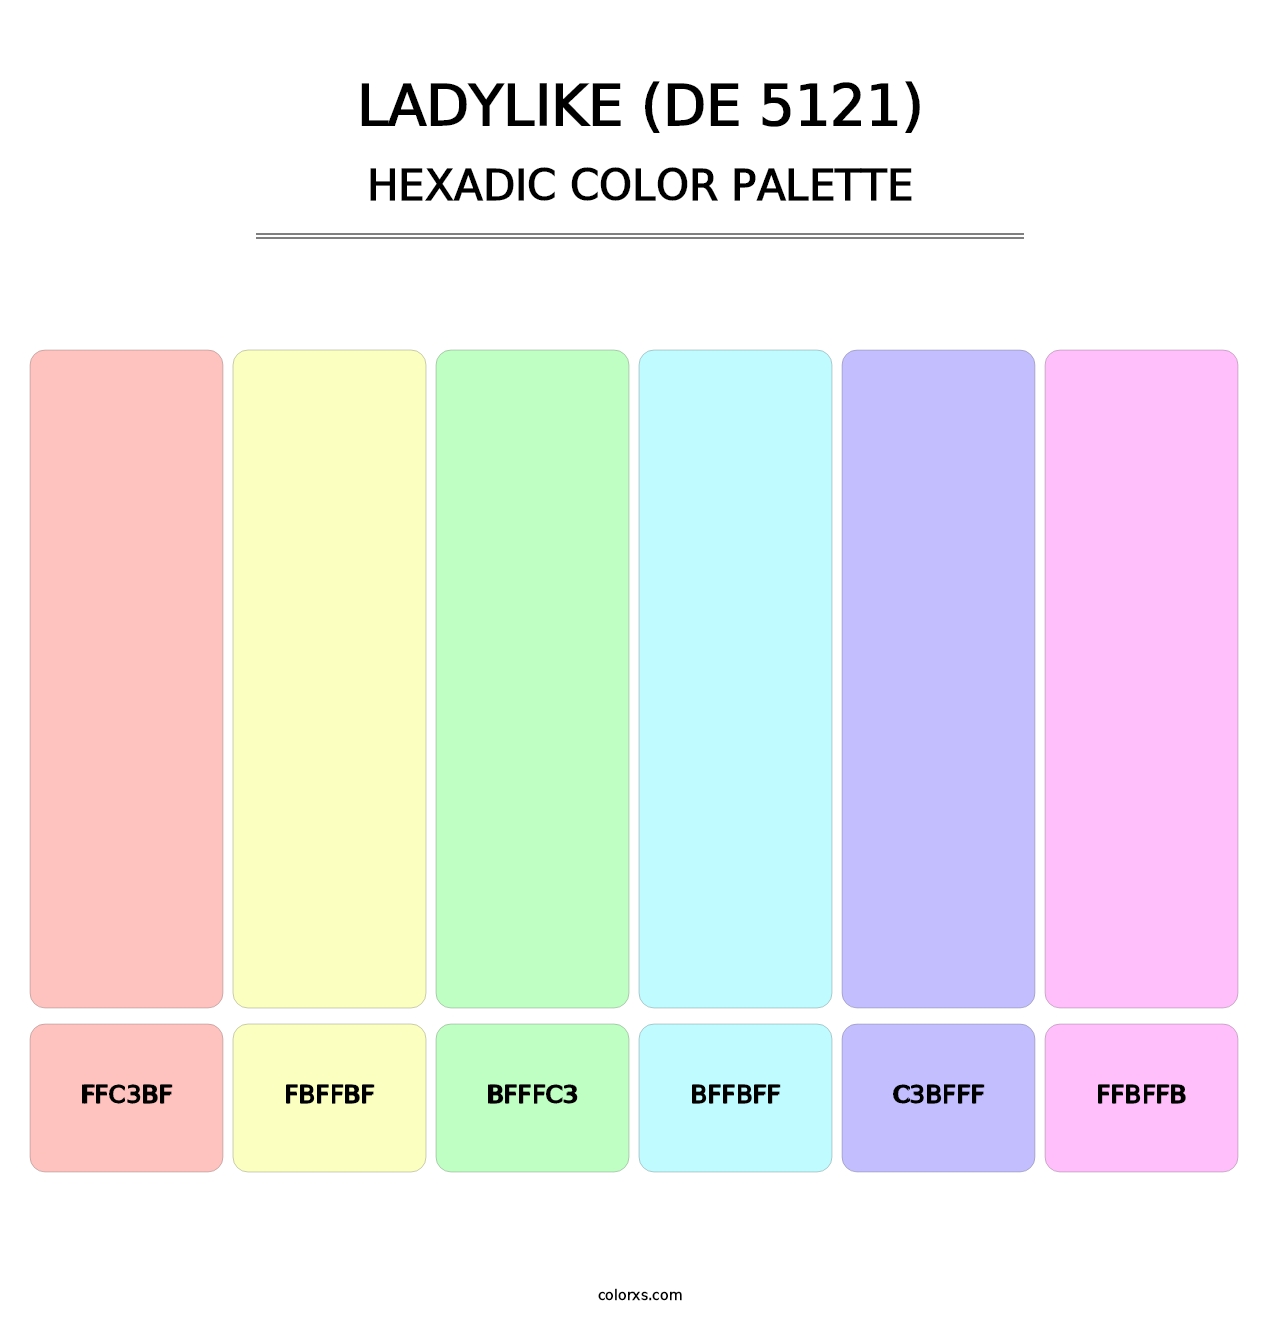 Ladylike (DE 5121) - Hexadic Color Palette